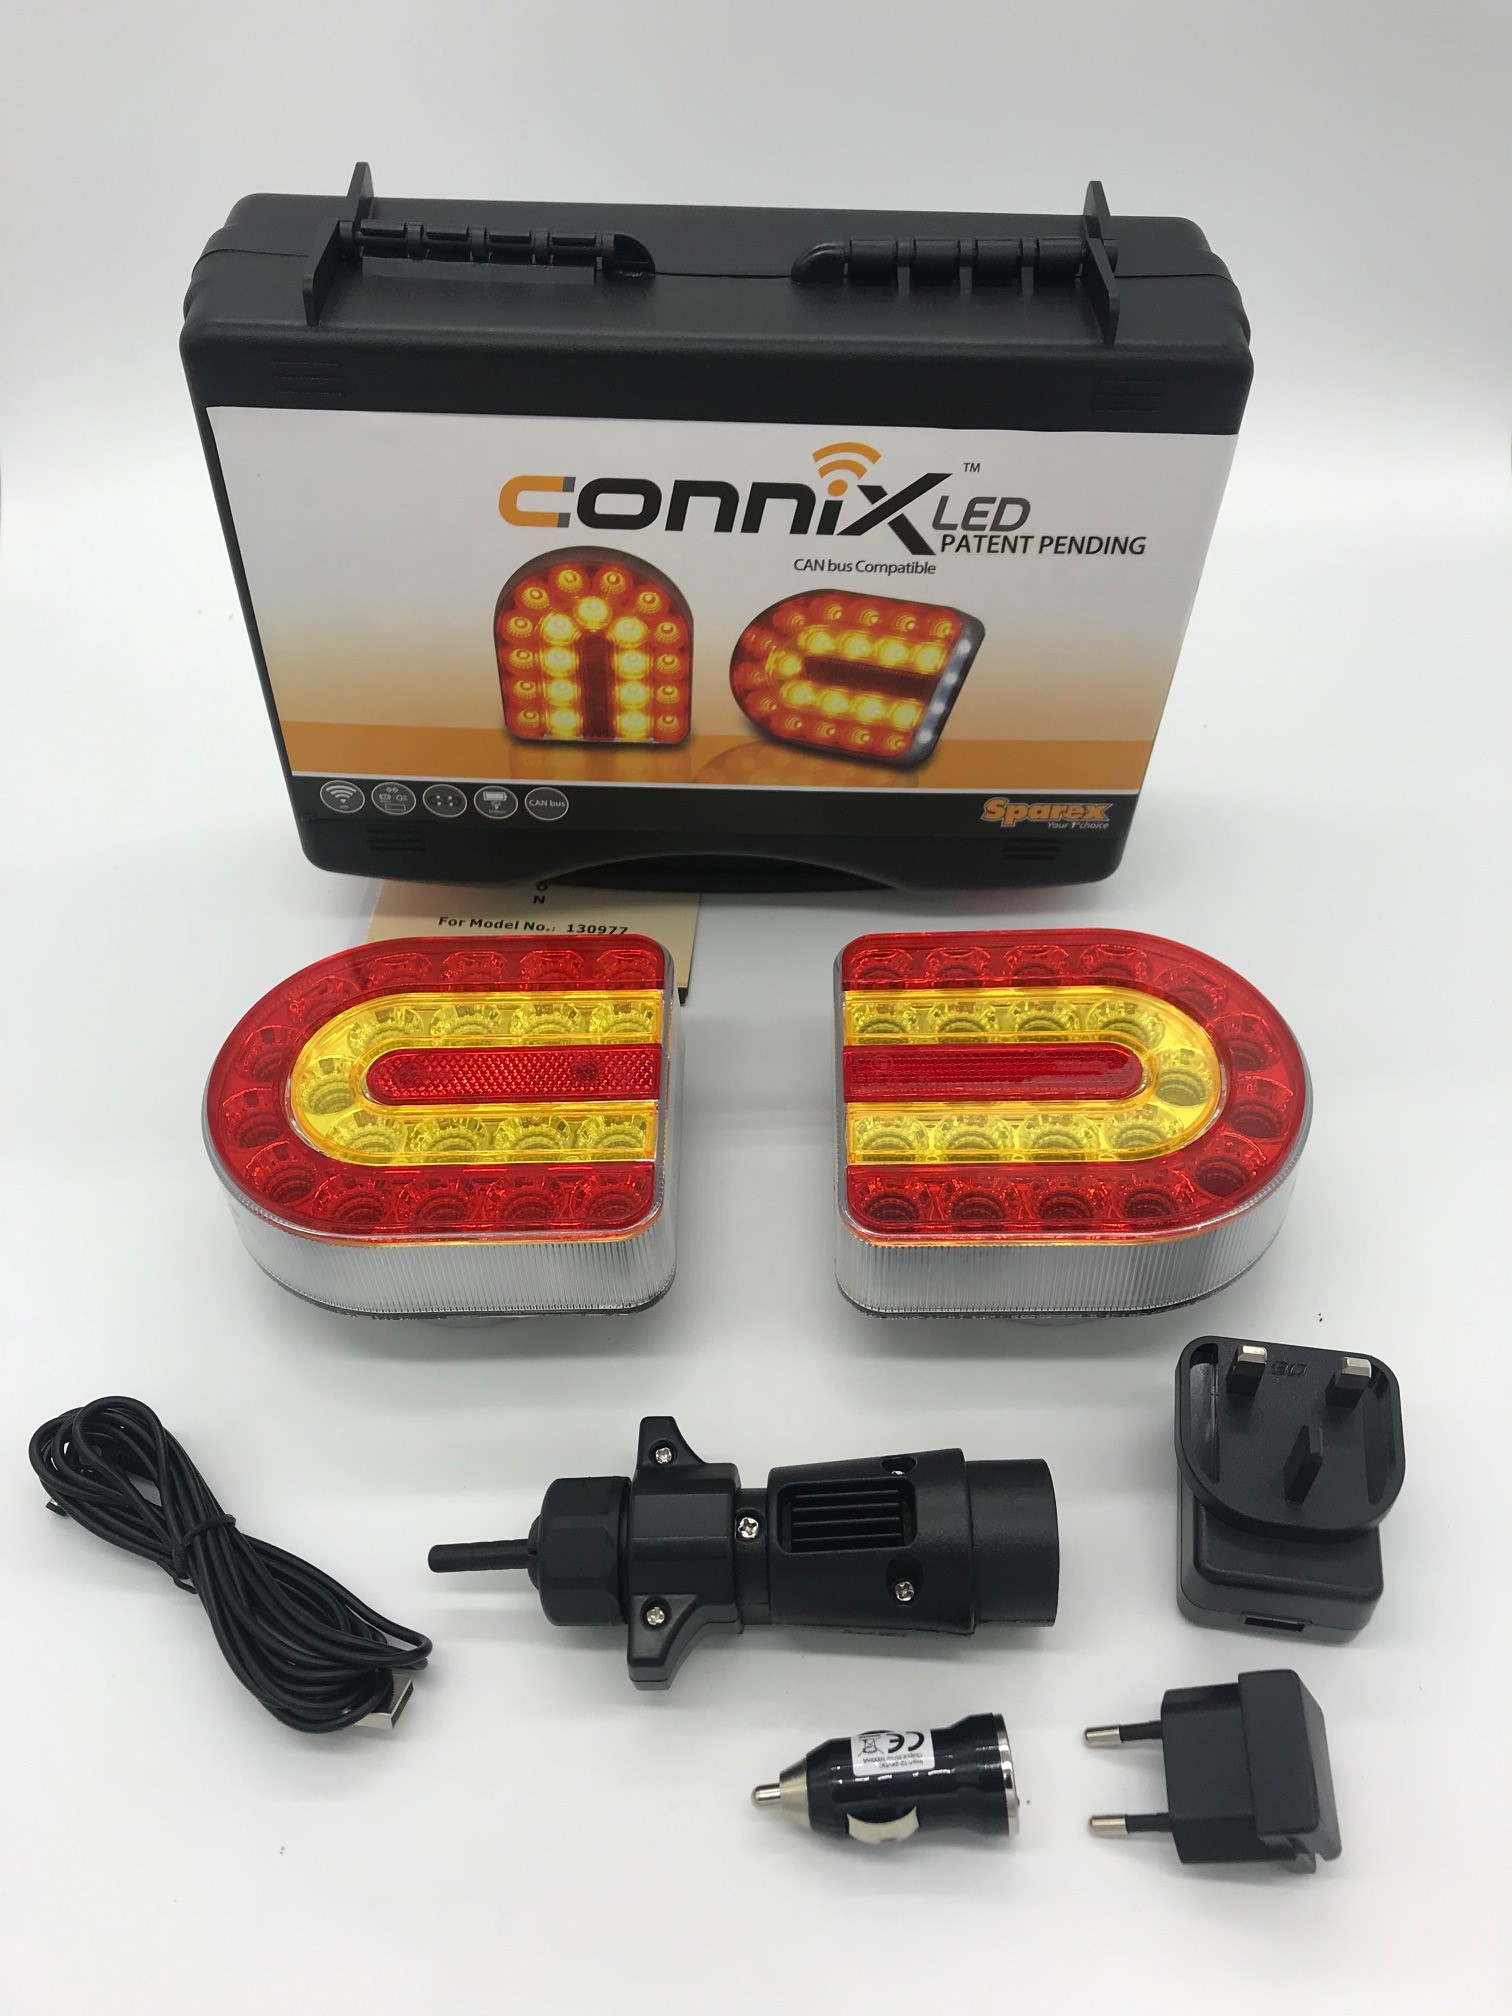 Connix CAN BUS fähig Leuchtensatz 24V kabellos Funk Magnet Anhänger Leuchten  Rücklicht - Schlepperteile Spezialist Steyr Fendt Case IHC